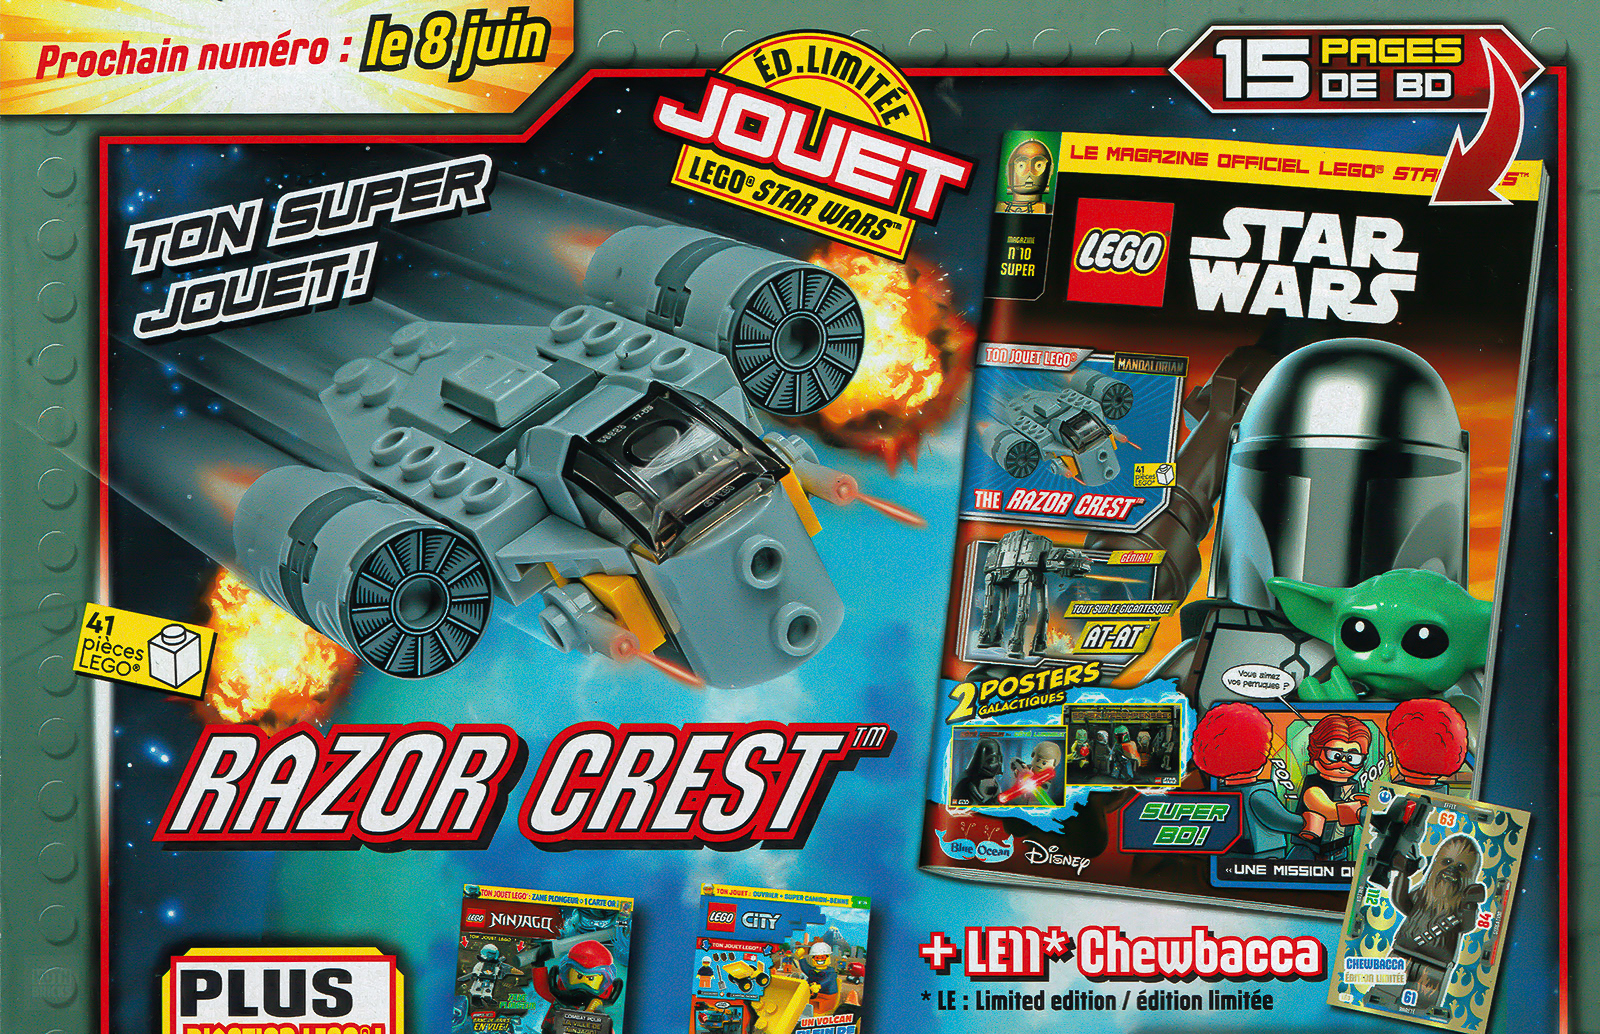 Á blaðastandi: Maí 2022 hefti opinbera LEGO Star Wars tímaritsins